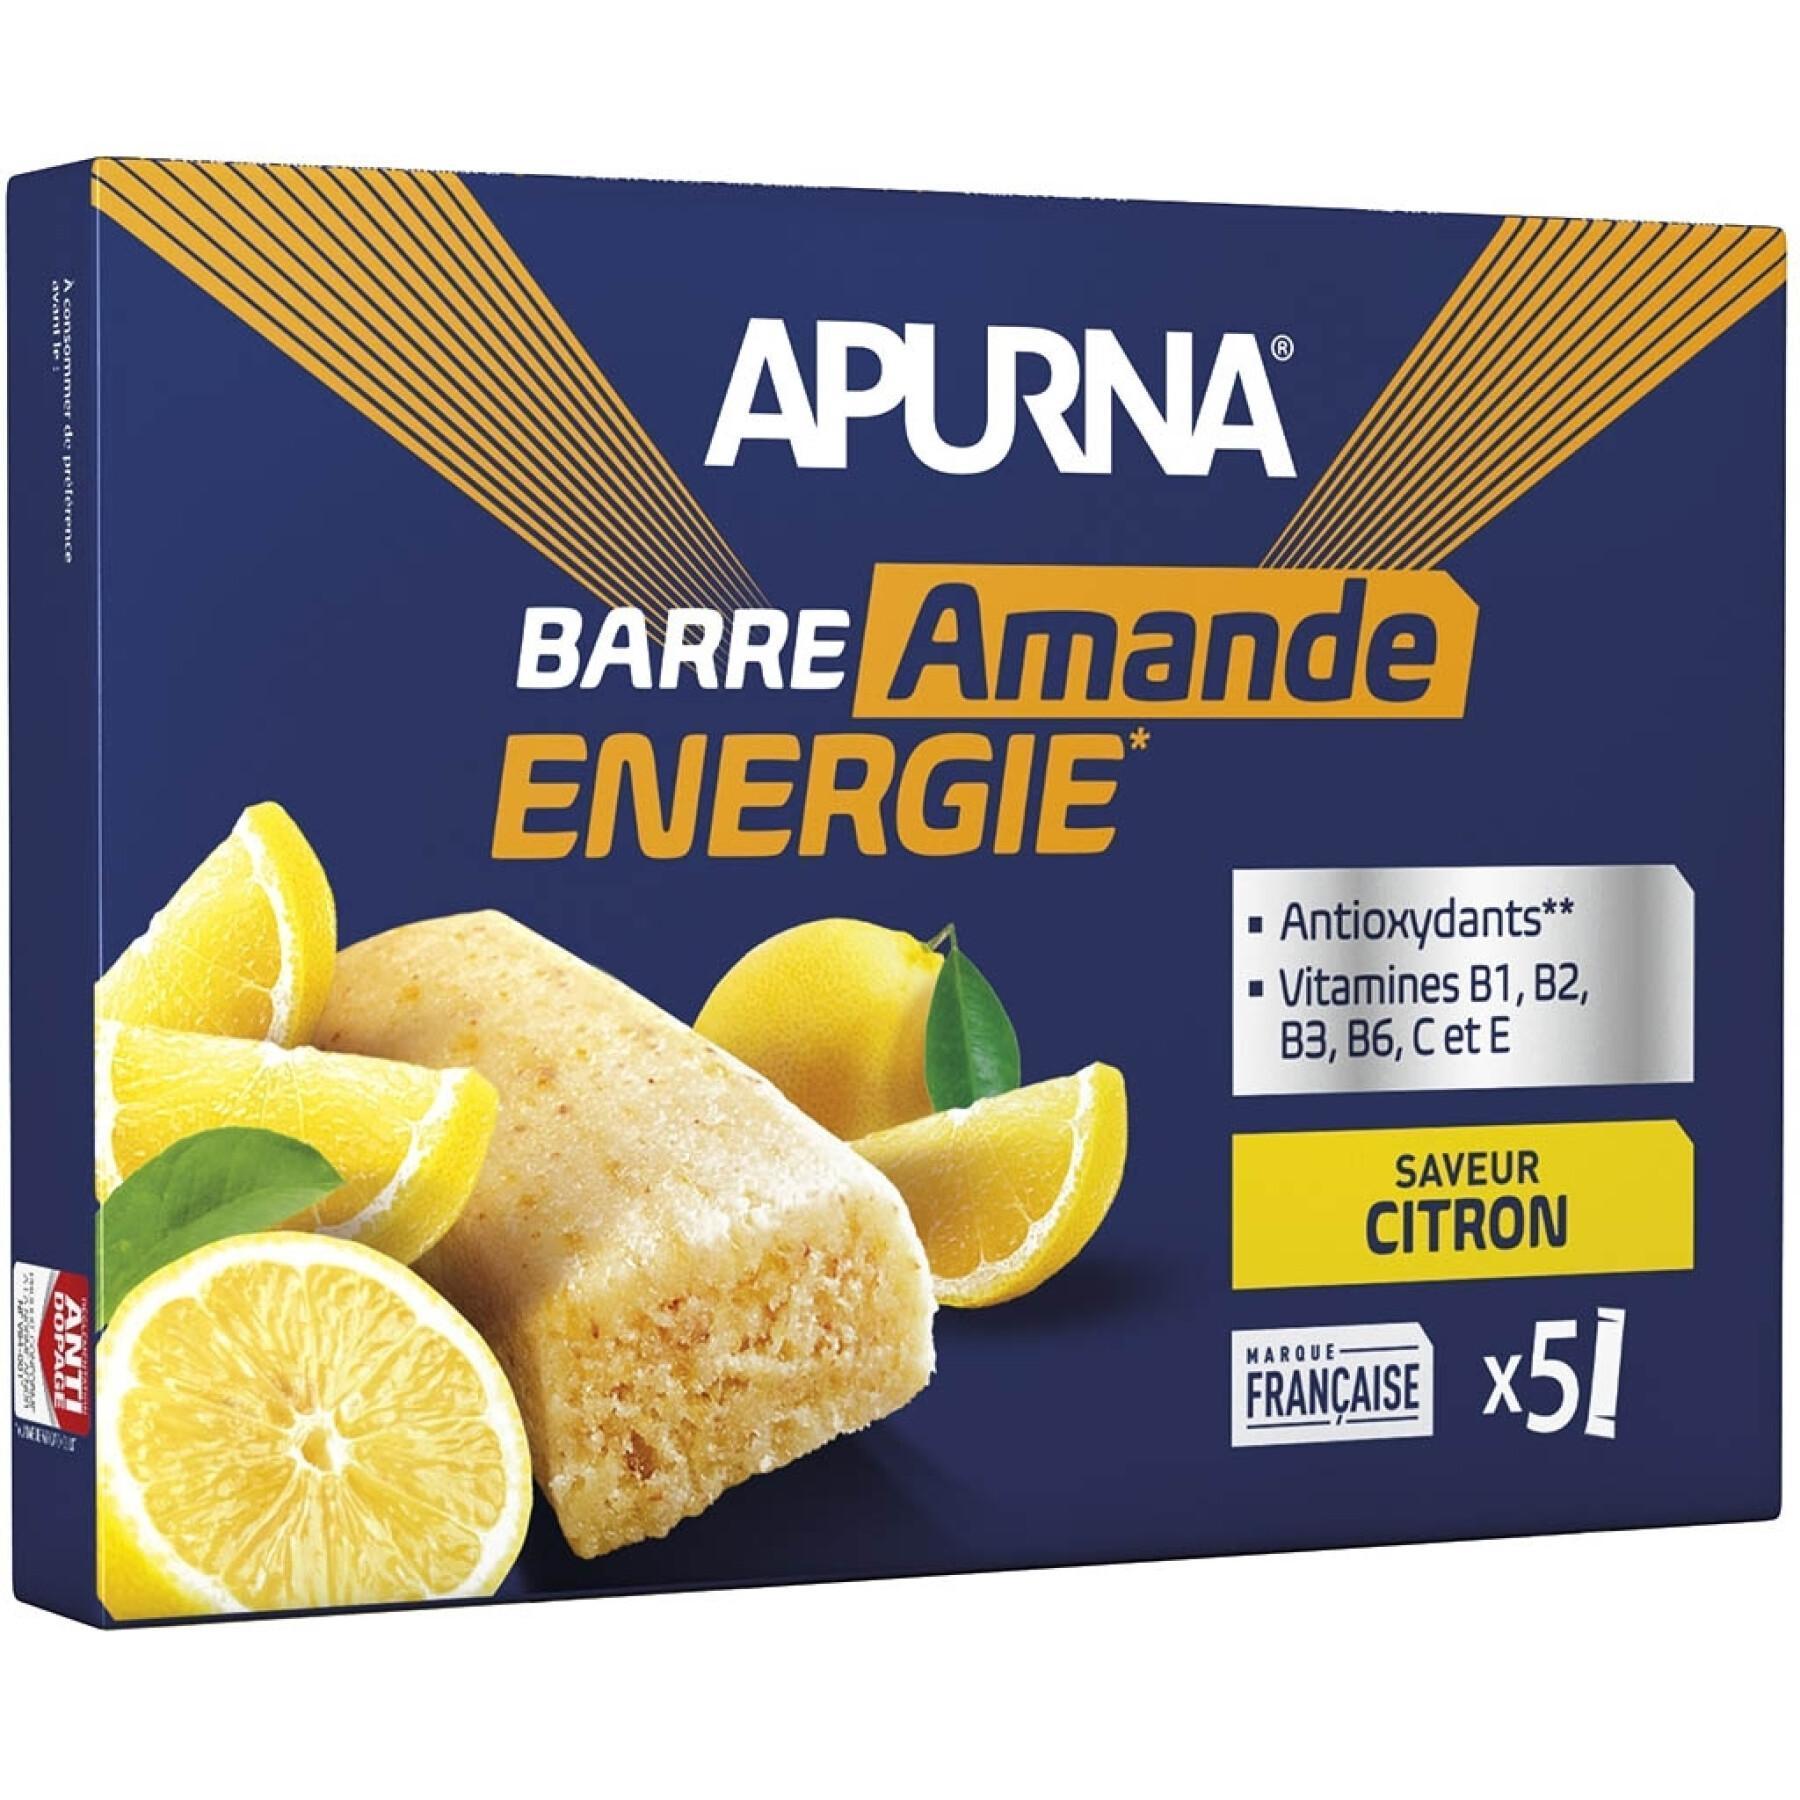 Lot de 5 barres énergétique fondante dont 1 barre offerte Apurna Citron/Amande